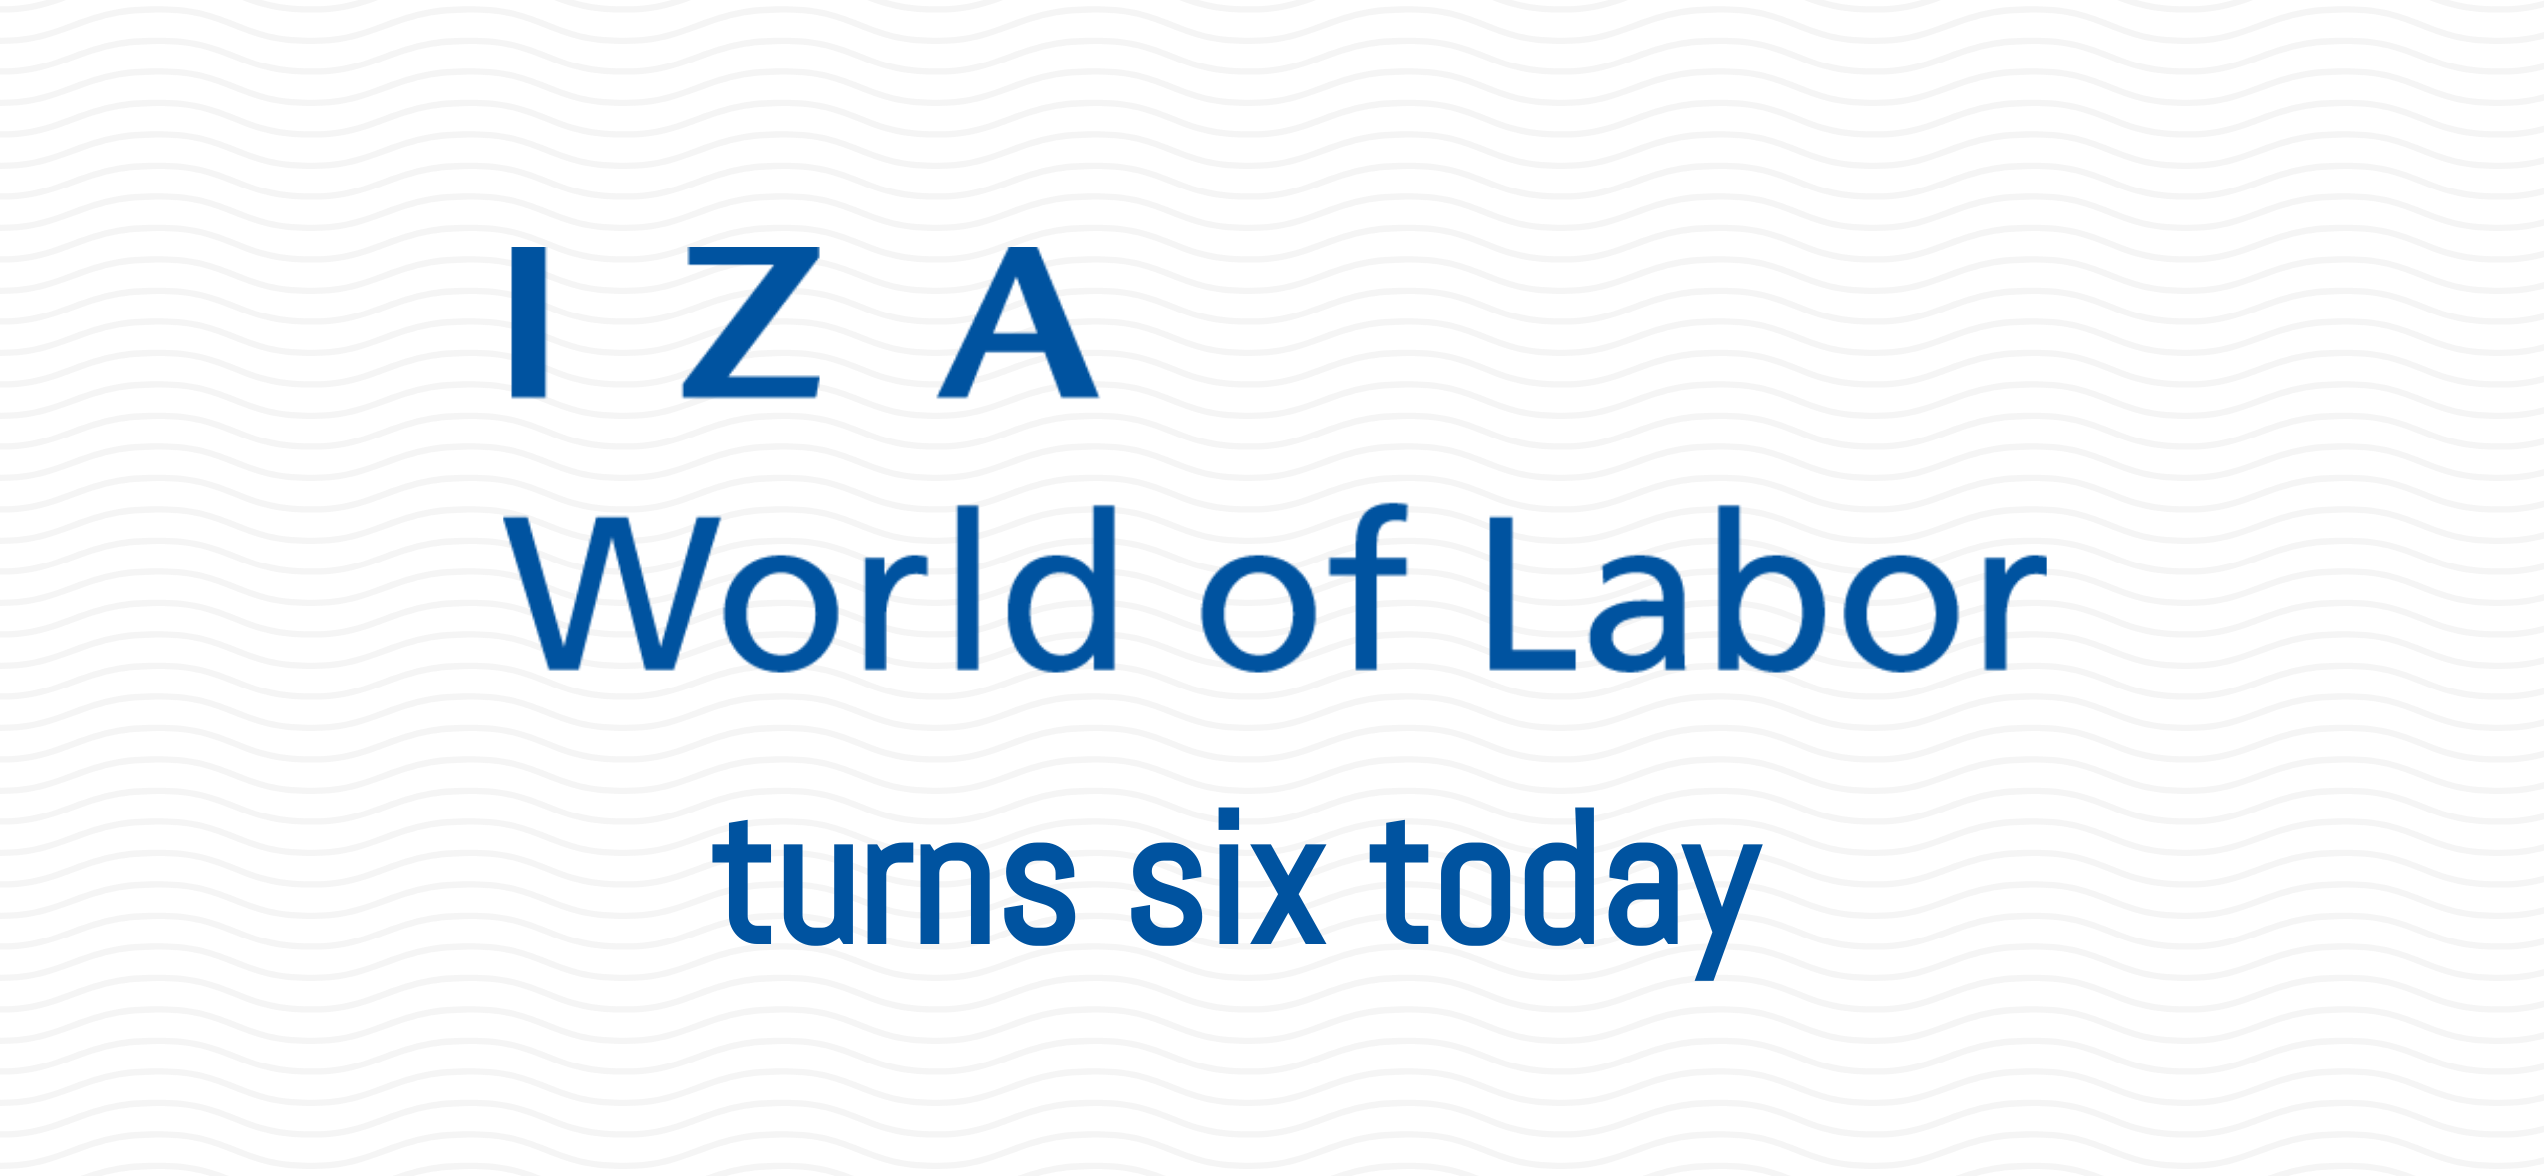 IZA劳动世界已经六岁了＂>
         </figure>
         <p>今天，在国际劳动节，我们庆祝IZA劳动世界于2014年5月1日在华盛顿特区的国家记者俱乐部首次启动六周年。今天，我们可以自豪地说，该网站拥有超过531篇文章(475篇新文章，56篇修订文章)，总结了劳动经济学中关键问题的研究成果。<br><br>我们继续致力于为政策分析师、记者、学者和社会提供有关劳动力市场问题的相关和简明的信息和分析。<br><br>为了帮助揭示新冠肺炎的潜在影响，我们的主编，教授<u><a href=